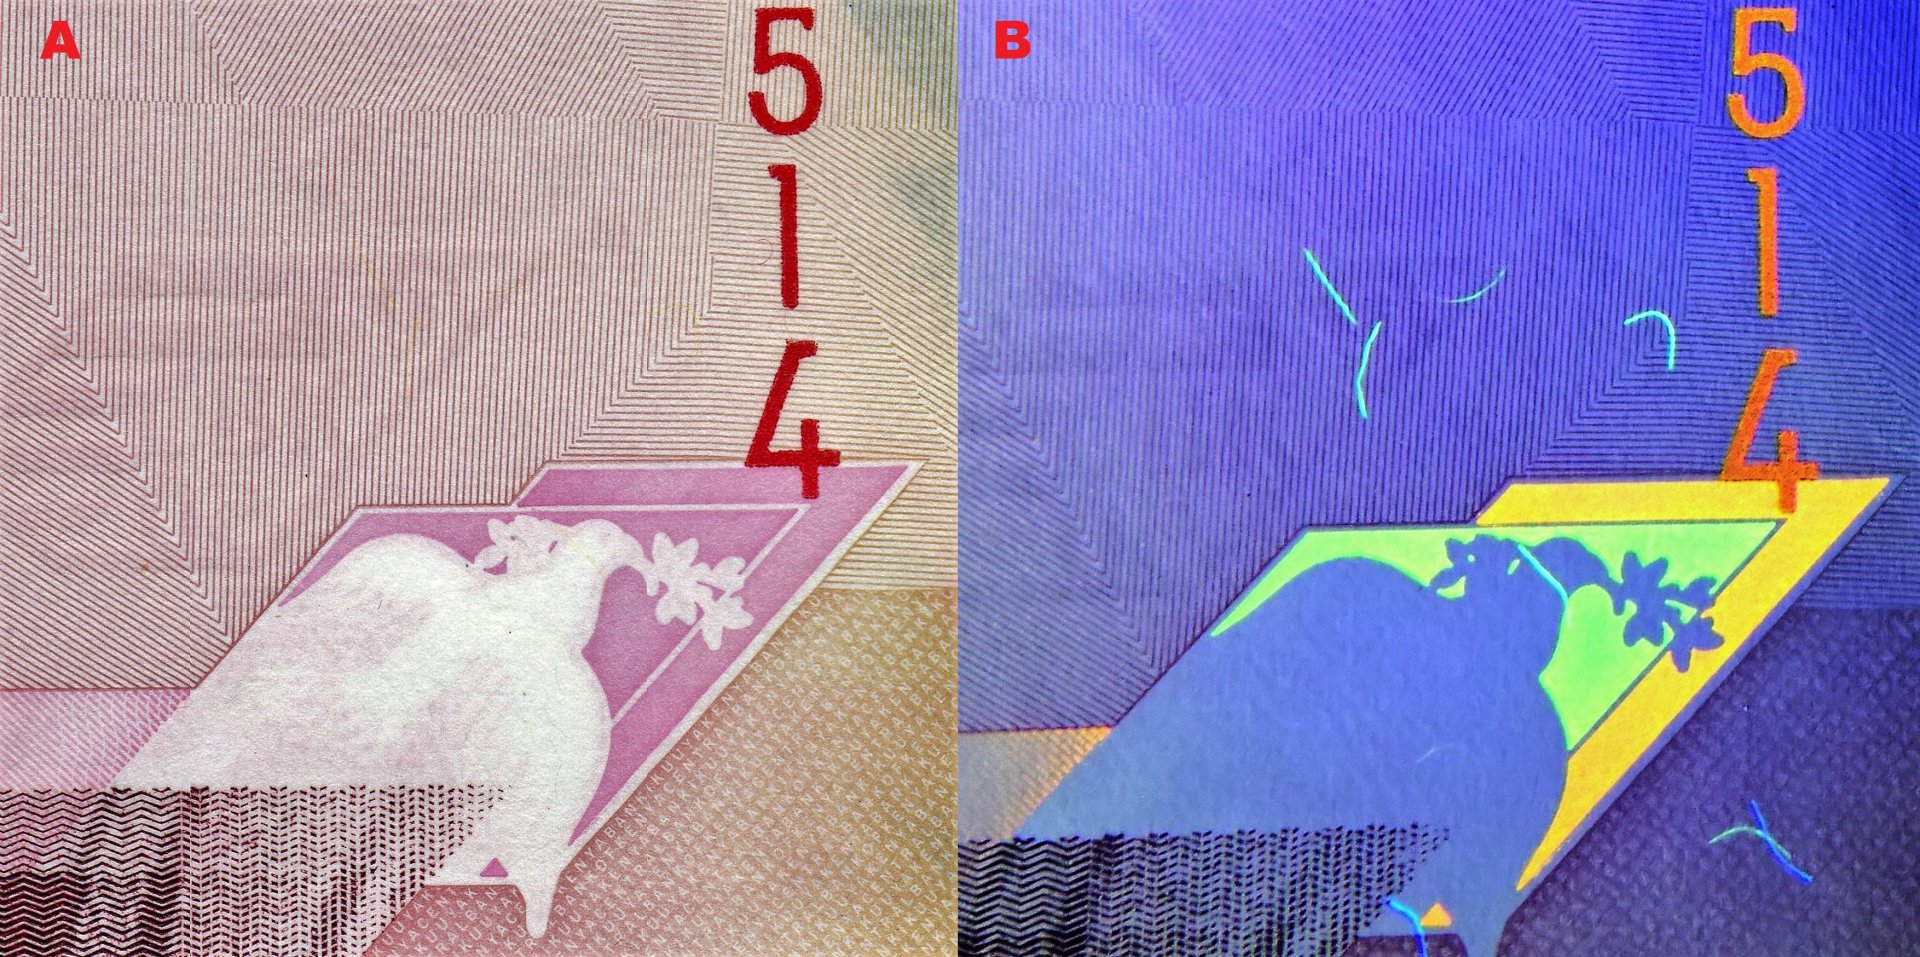 2. A) Dva překrývající se kosodélníky a letící holubice s ratolestí B) tentýž obraz pod UV nasvícením, difuzně jsou patrna UV pozitivní vlákna.